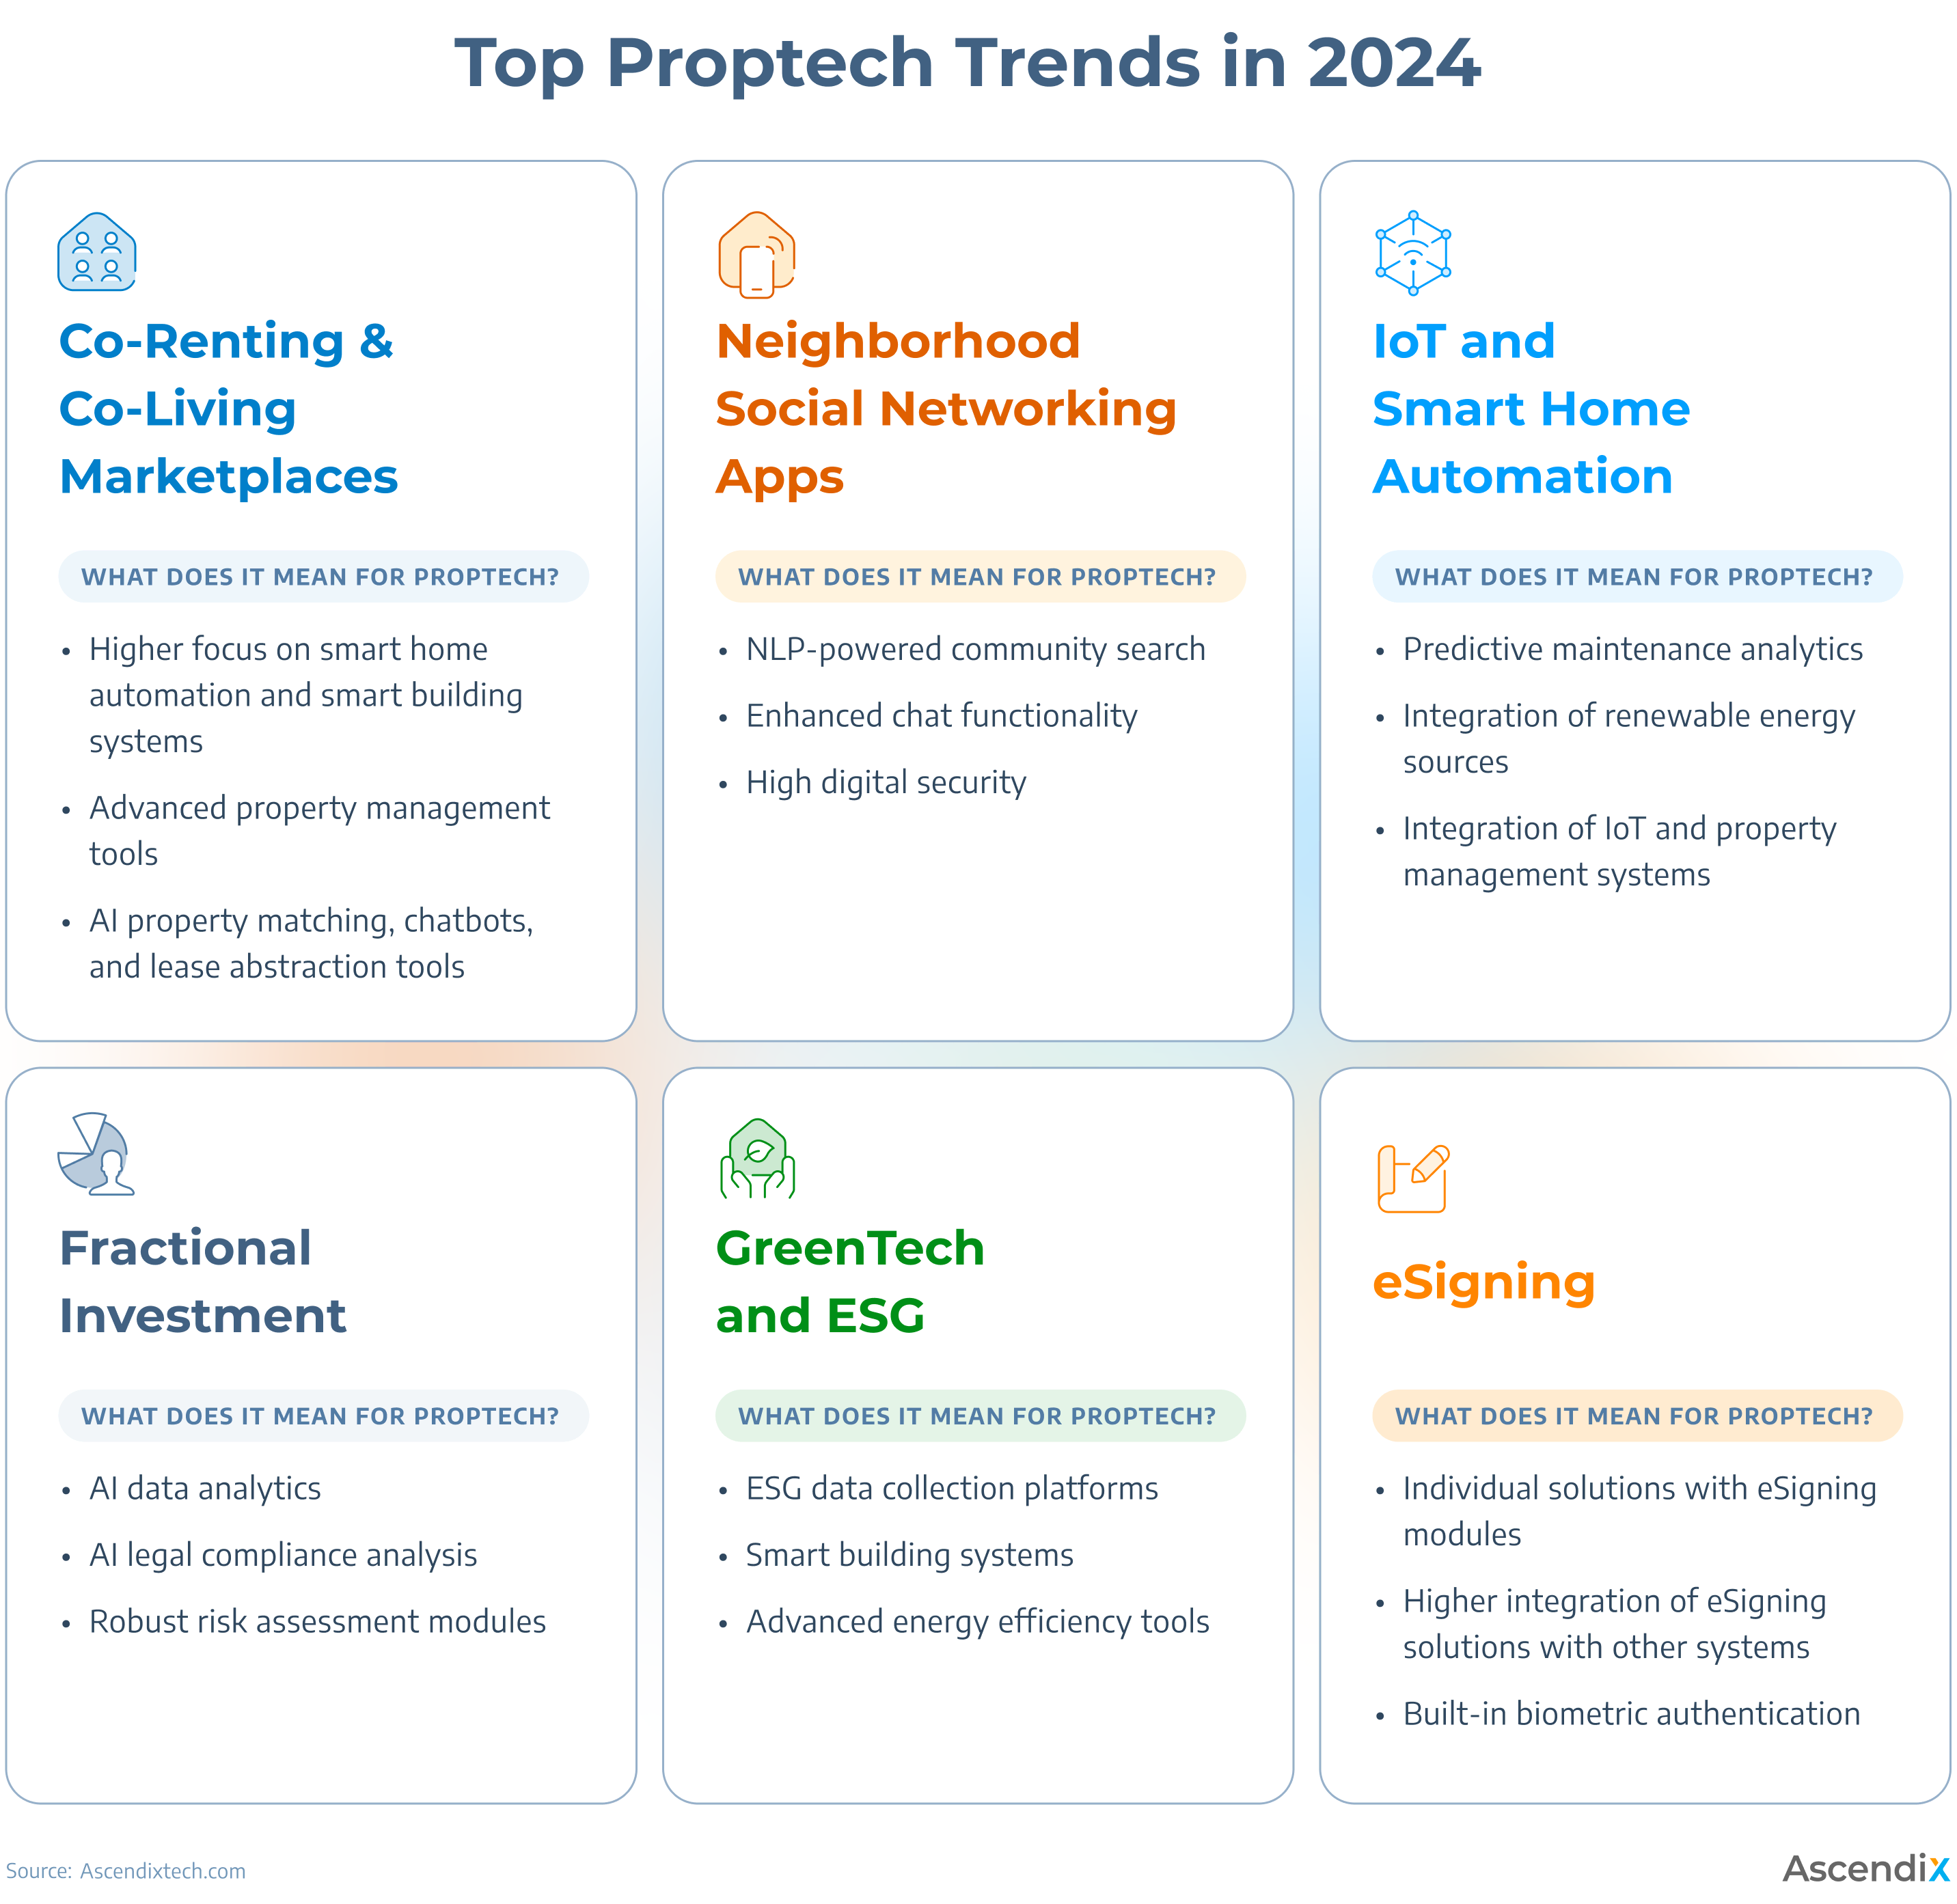 Top Proptech Trends in 2024